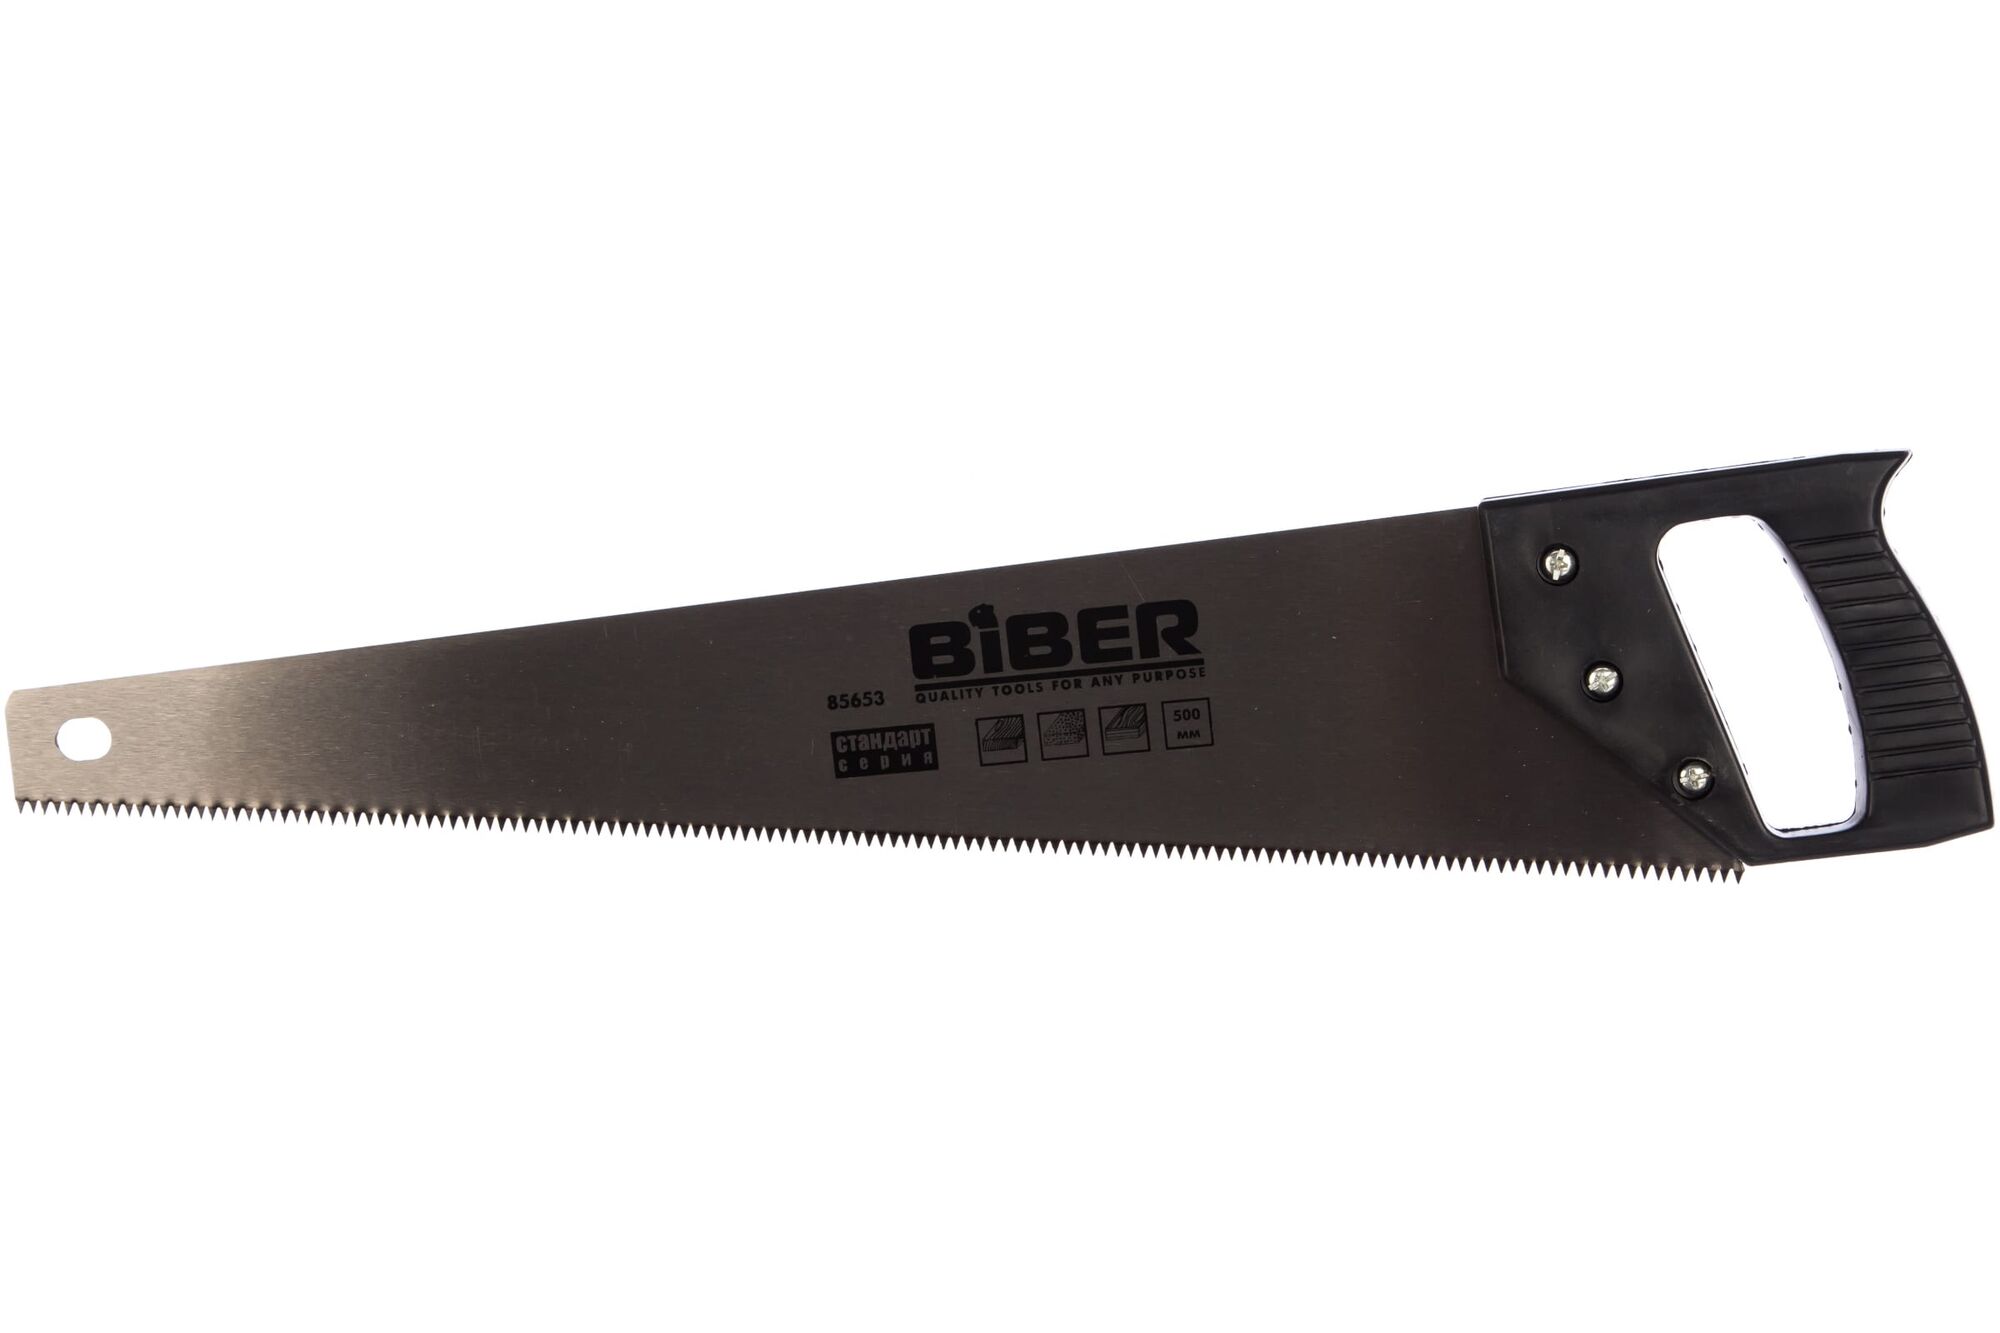 Ножовка по дереву средний зуб 500 мм Biber Стандарт 85653 тов-080814